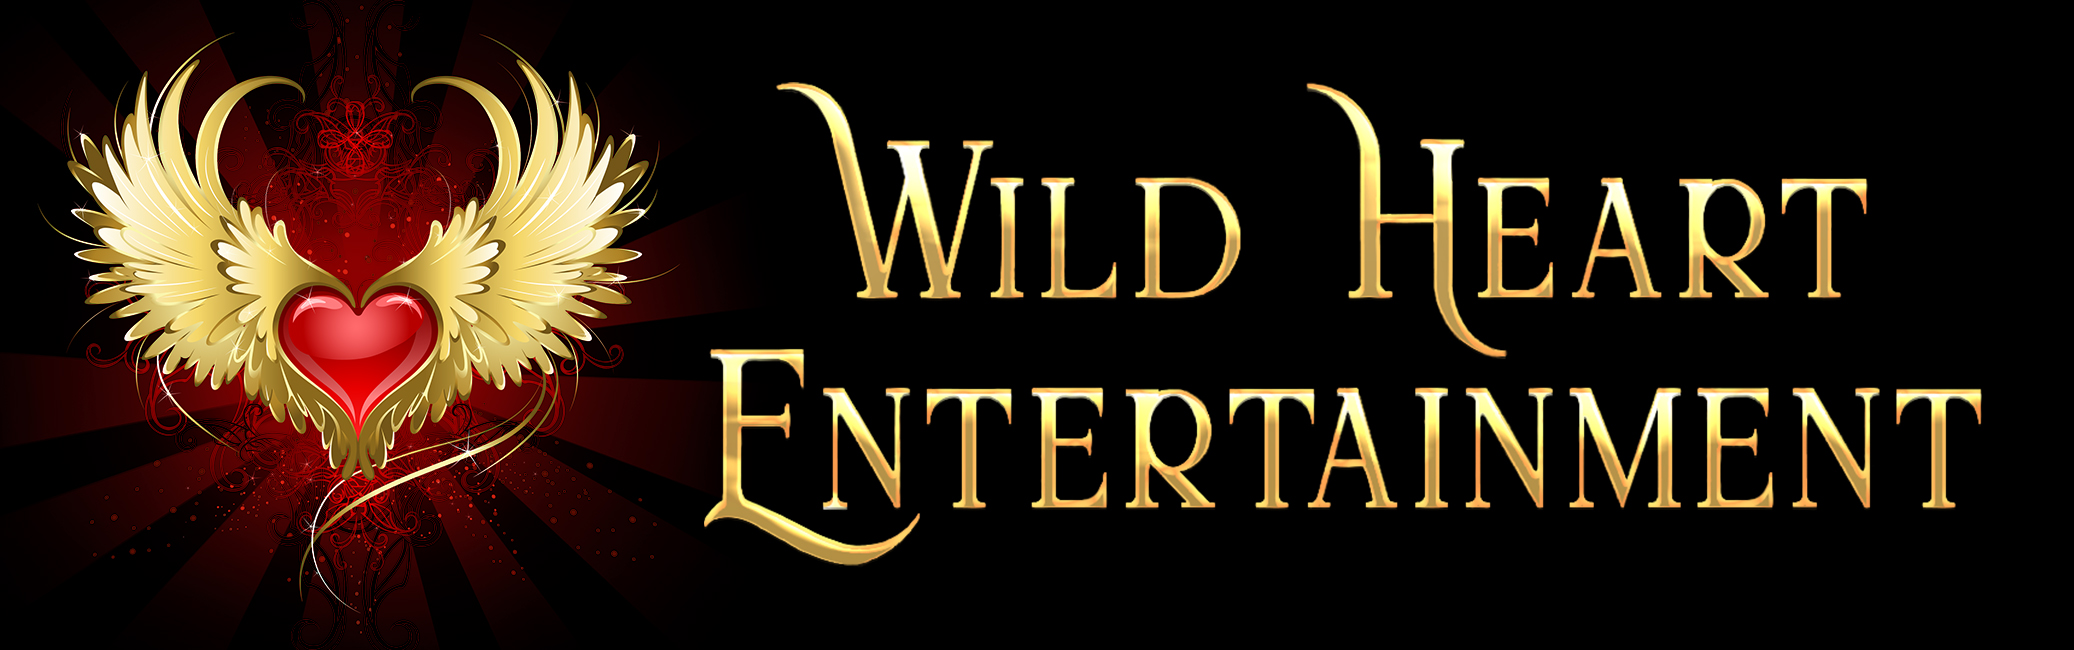 Wild Heart Entertainment